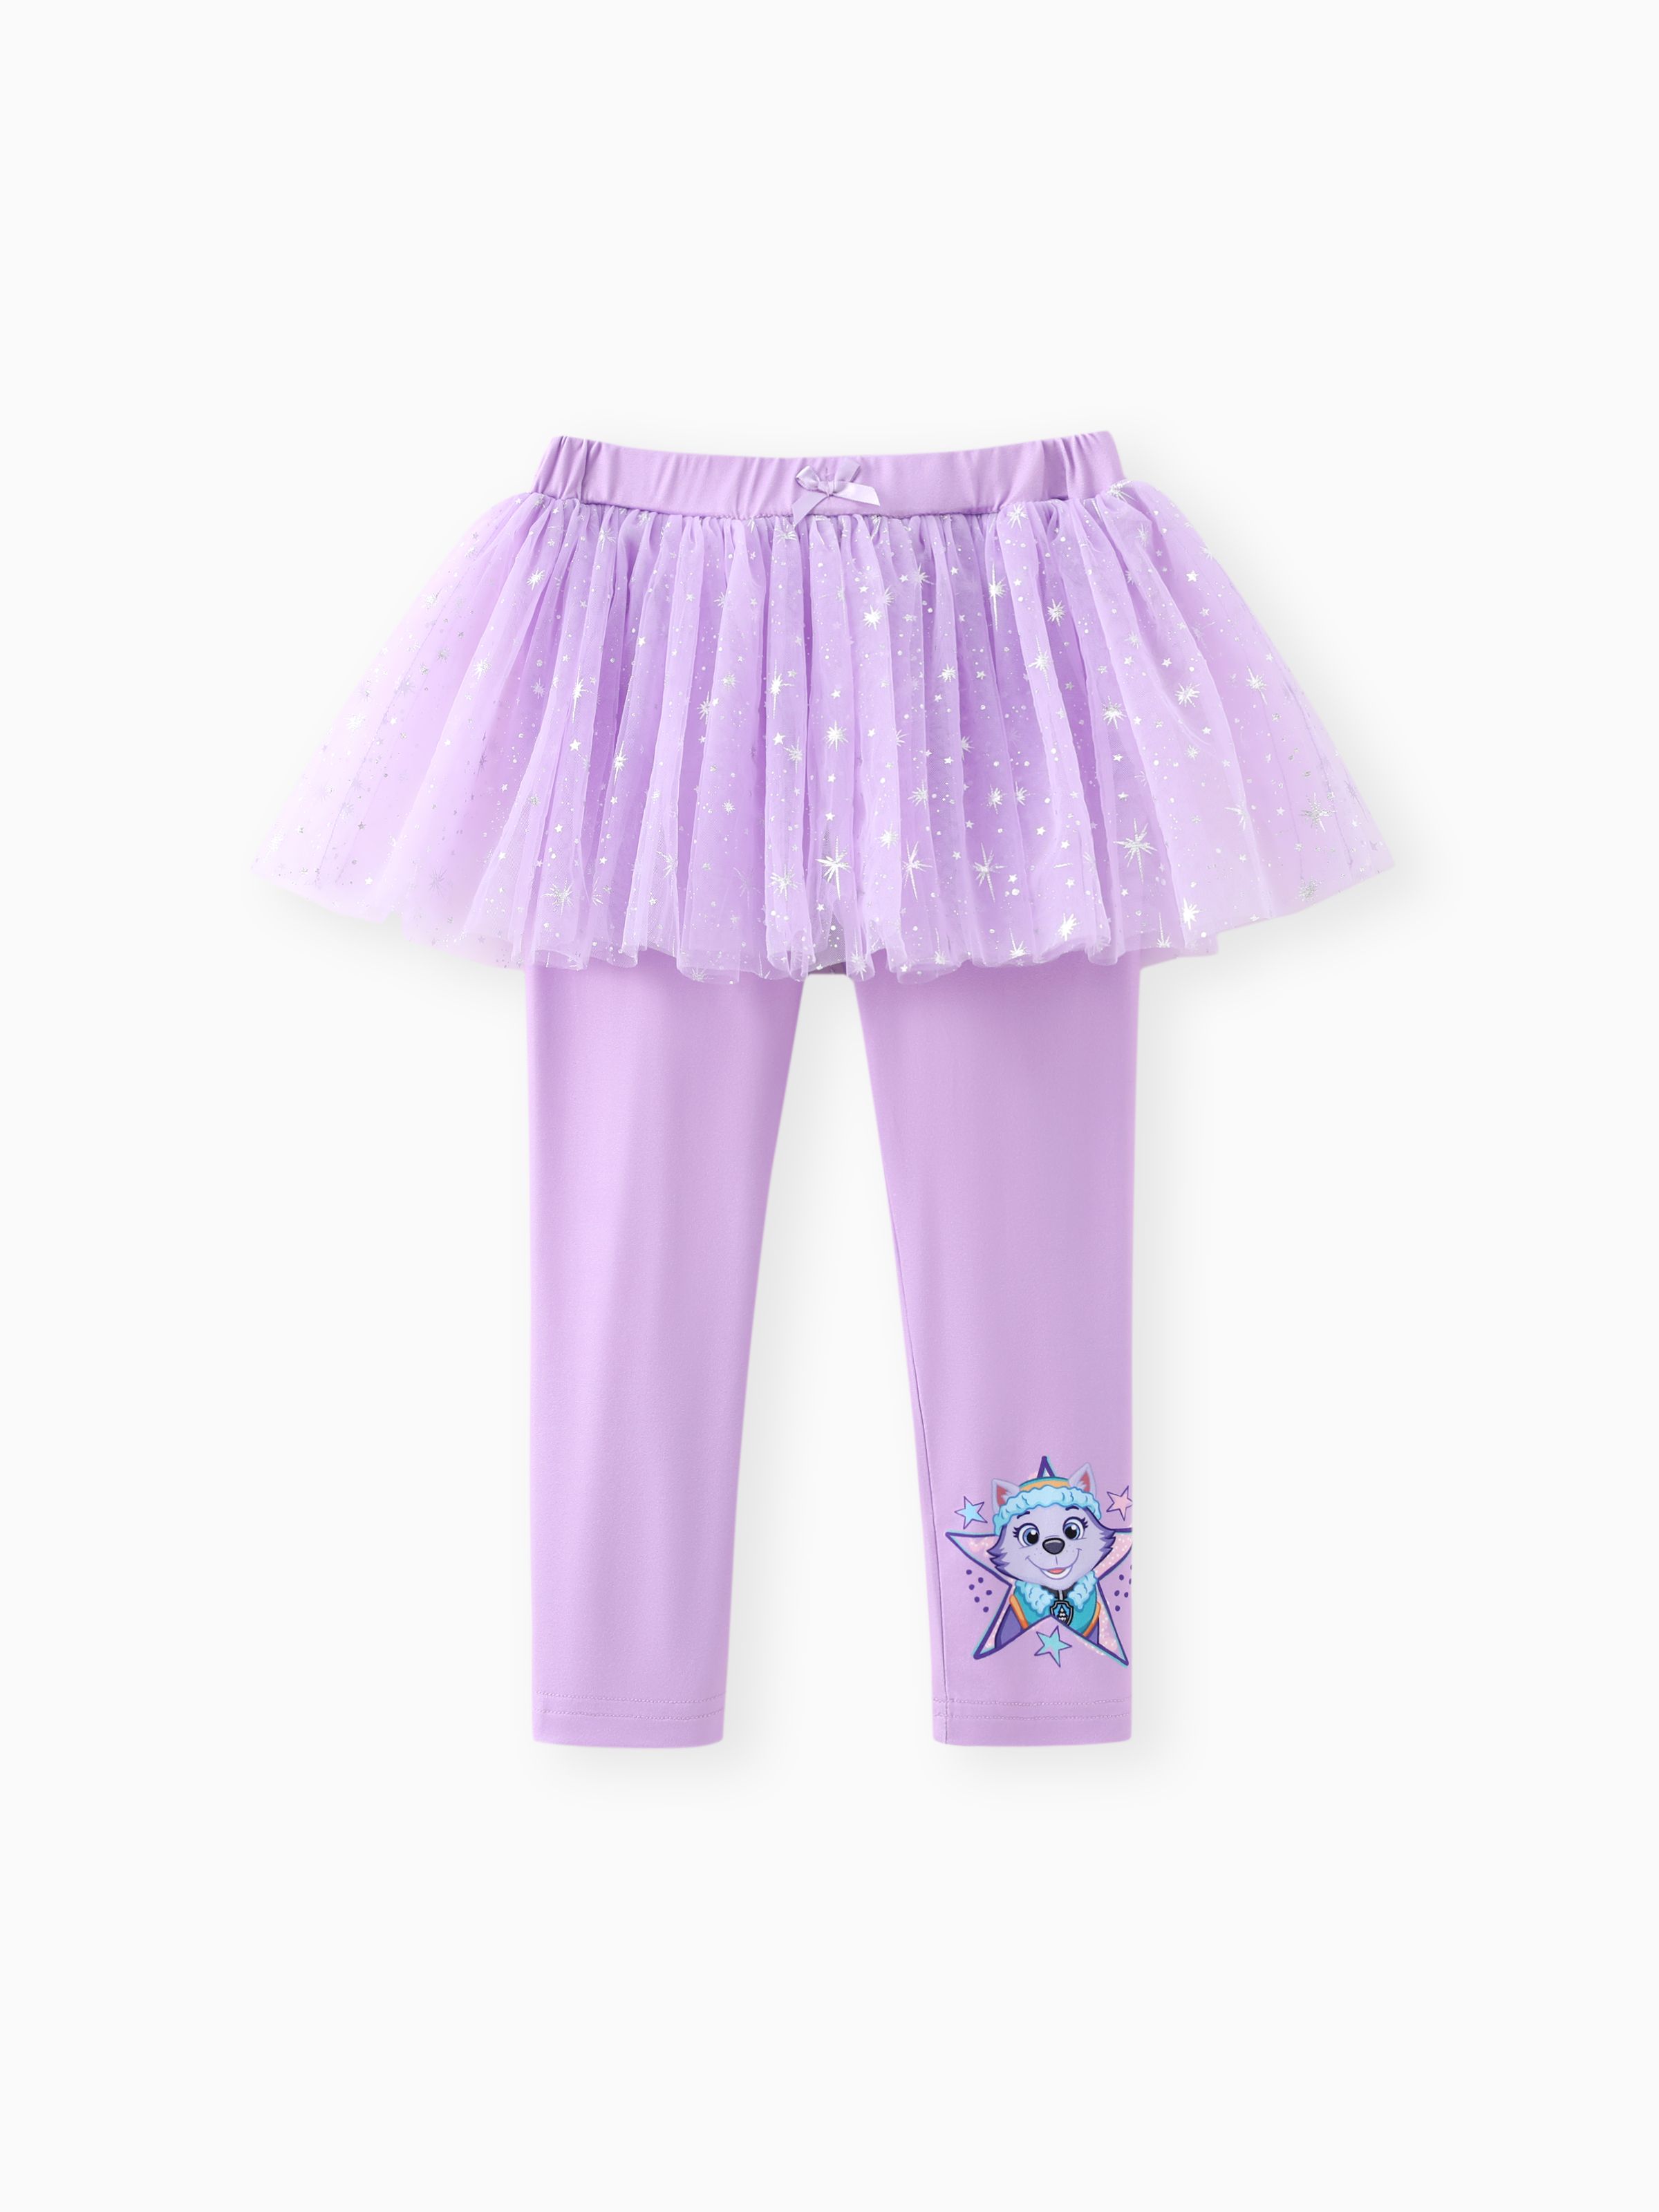 

Paw Patrol Toddler Girls 1pc Shinny Star Print Tulle Skirt Leggings